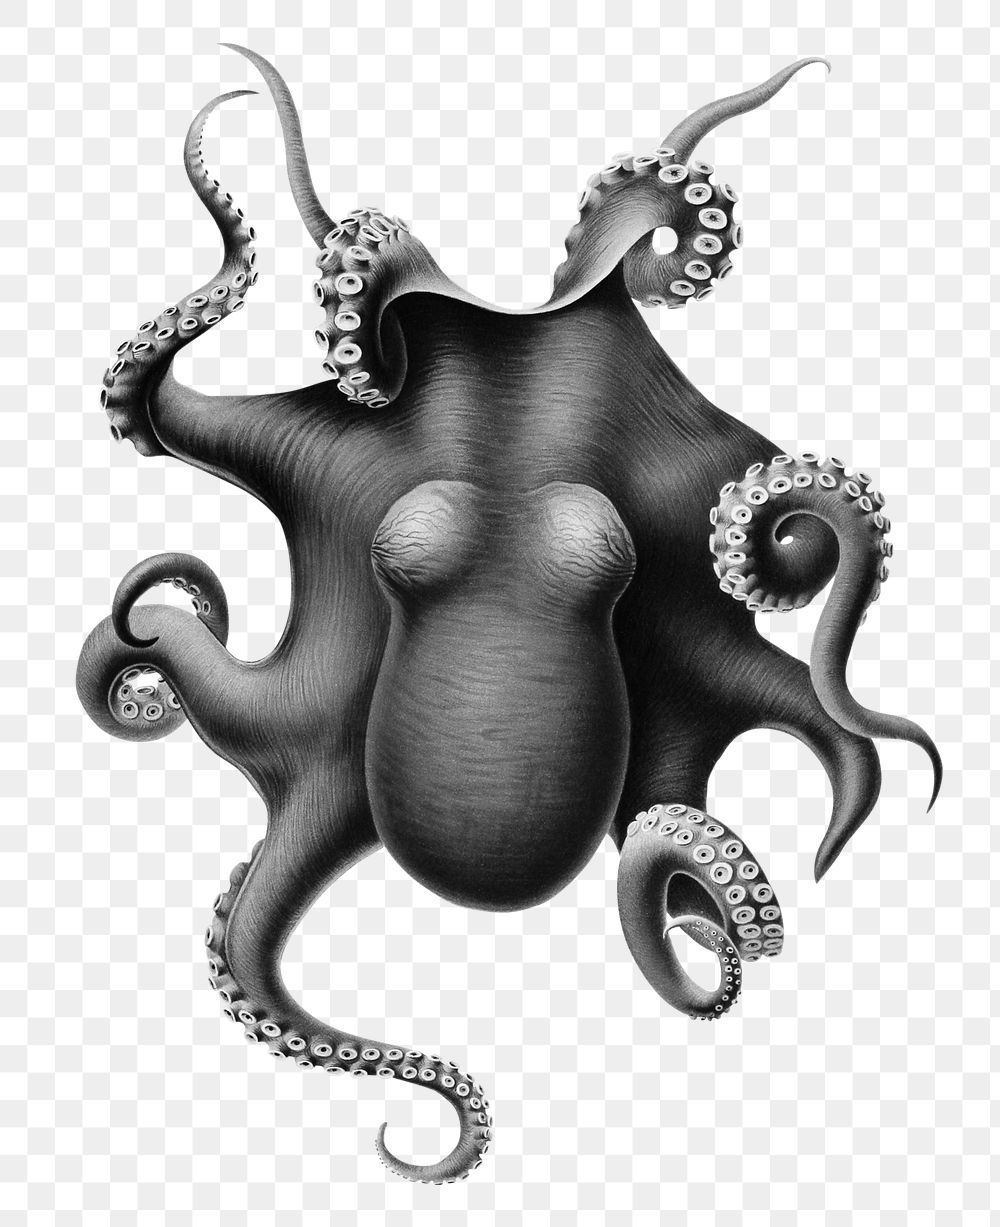 Vintage octopus png sticker, transparent background